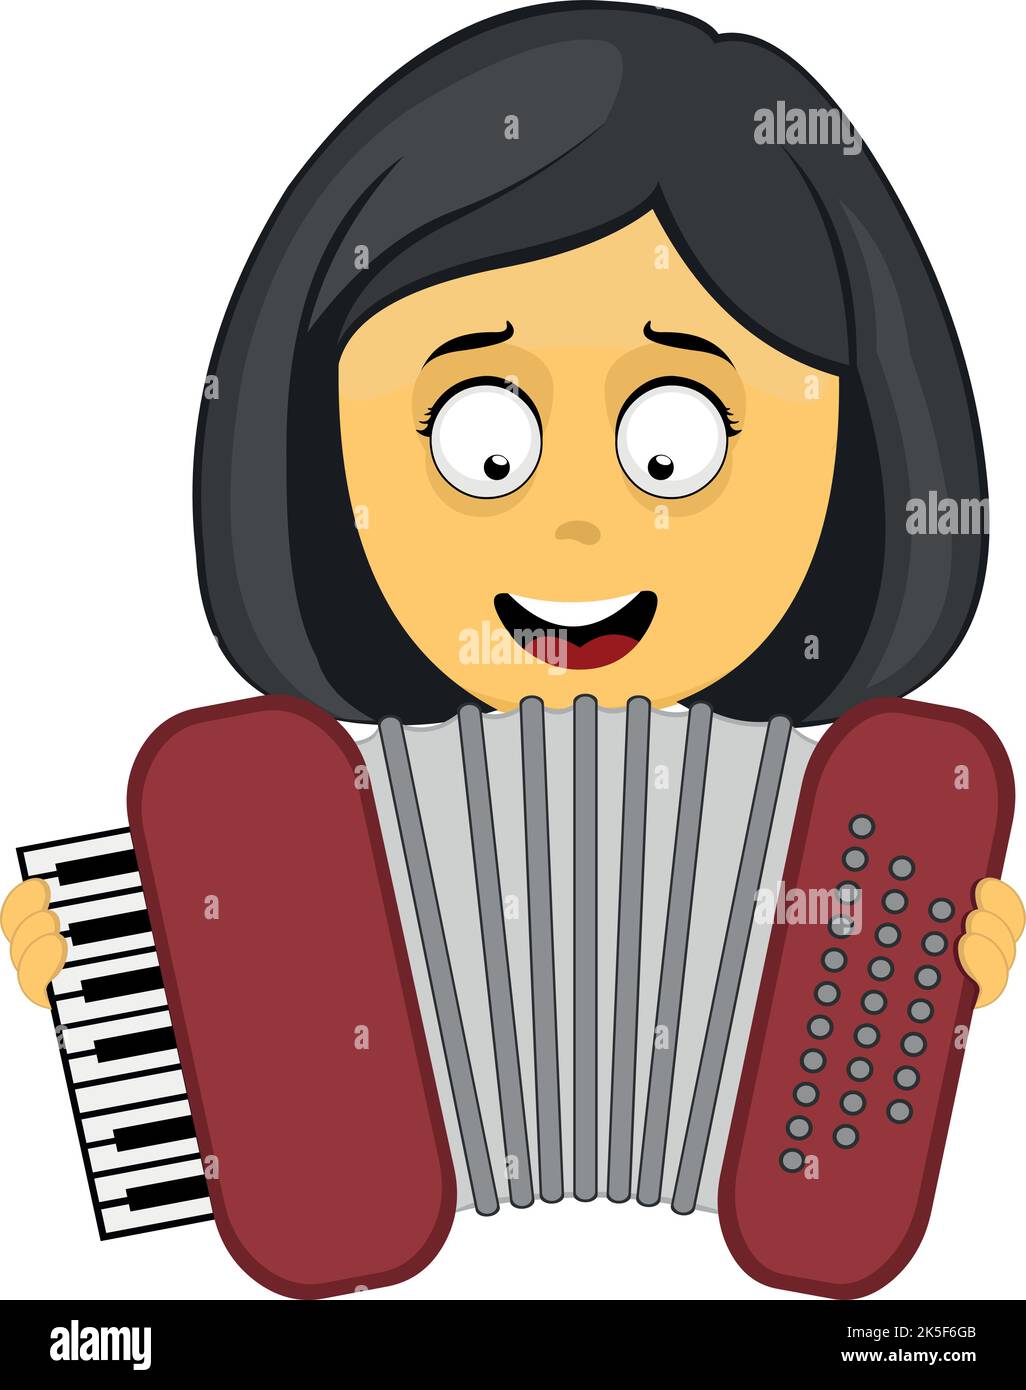 Illustrazione vettoriale di una donna cartoon gialla che suona fisarmonica o bayan con strumenti musicali Illustrazione Vettoriale